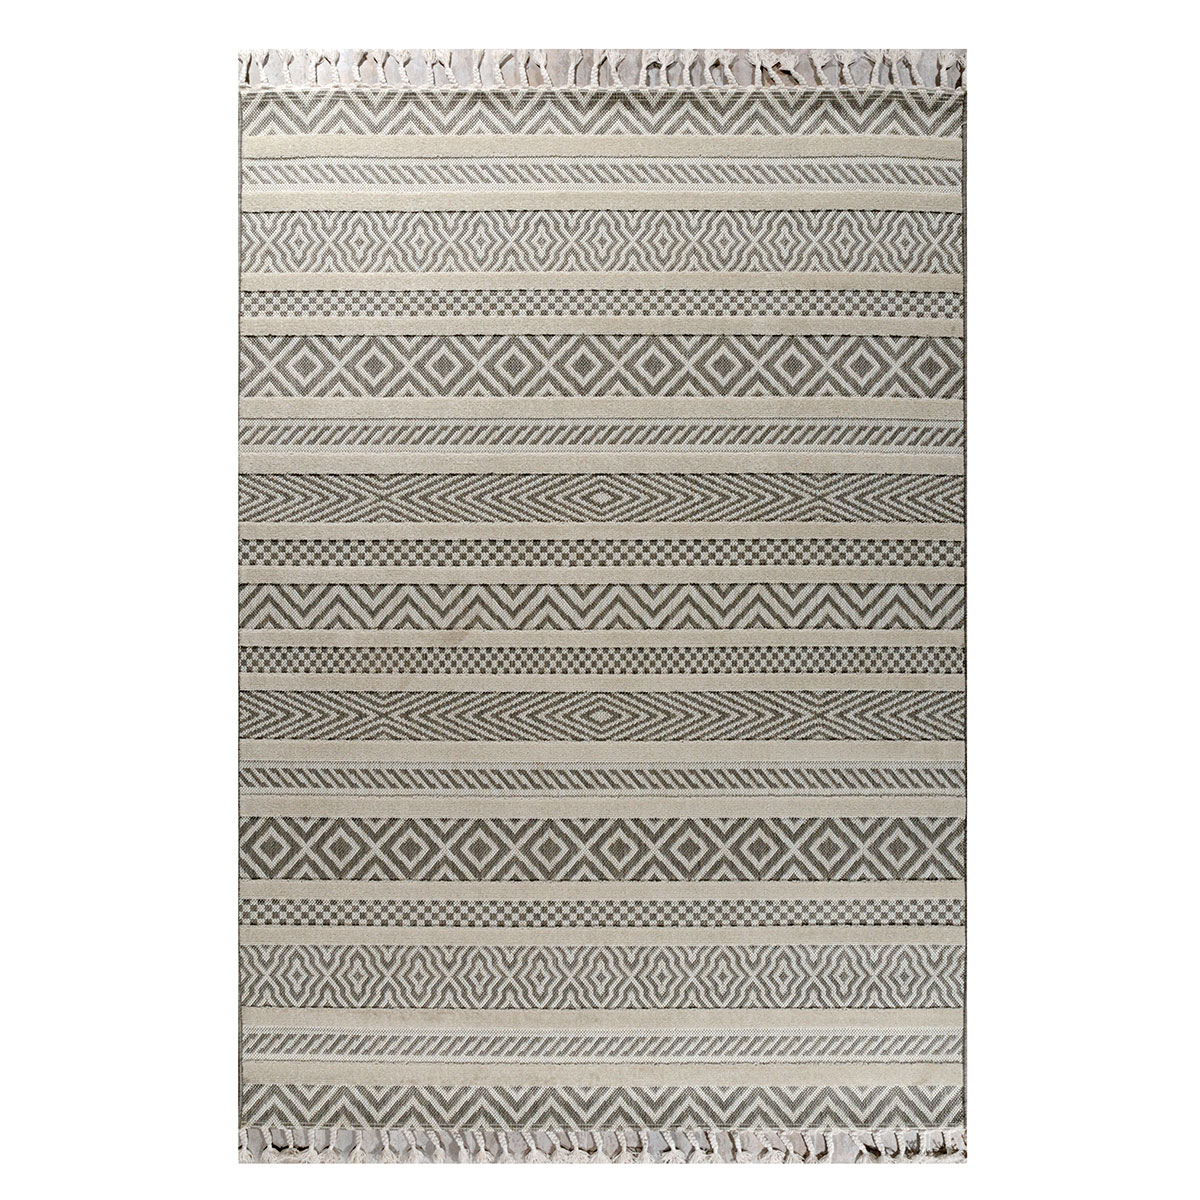 Χαλί All Season (160×230) Tzikas Carpets Tenerife 54102-260